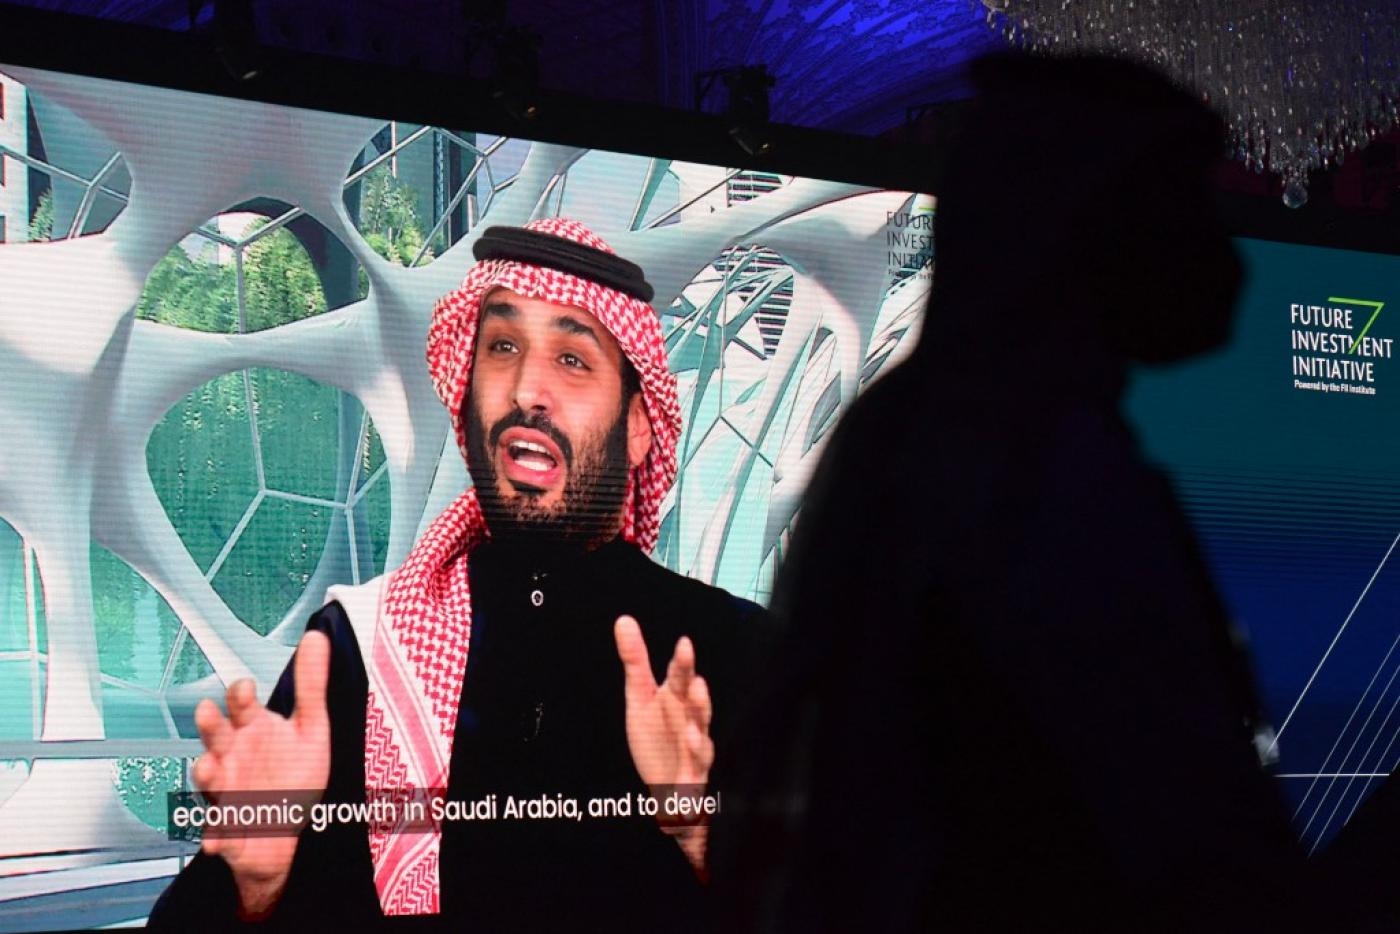 Le prince héritier d’Arabie saoudite Mohammed ben Salmane s’exprime en visioconférence à l’occasion de la Future Investment Initiative, le 28 janvier 2021 à Riyad (AFP)